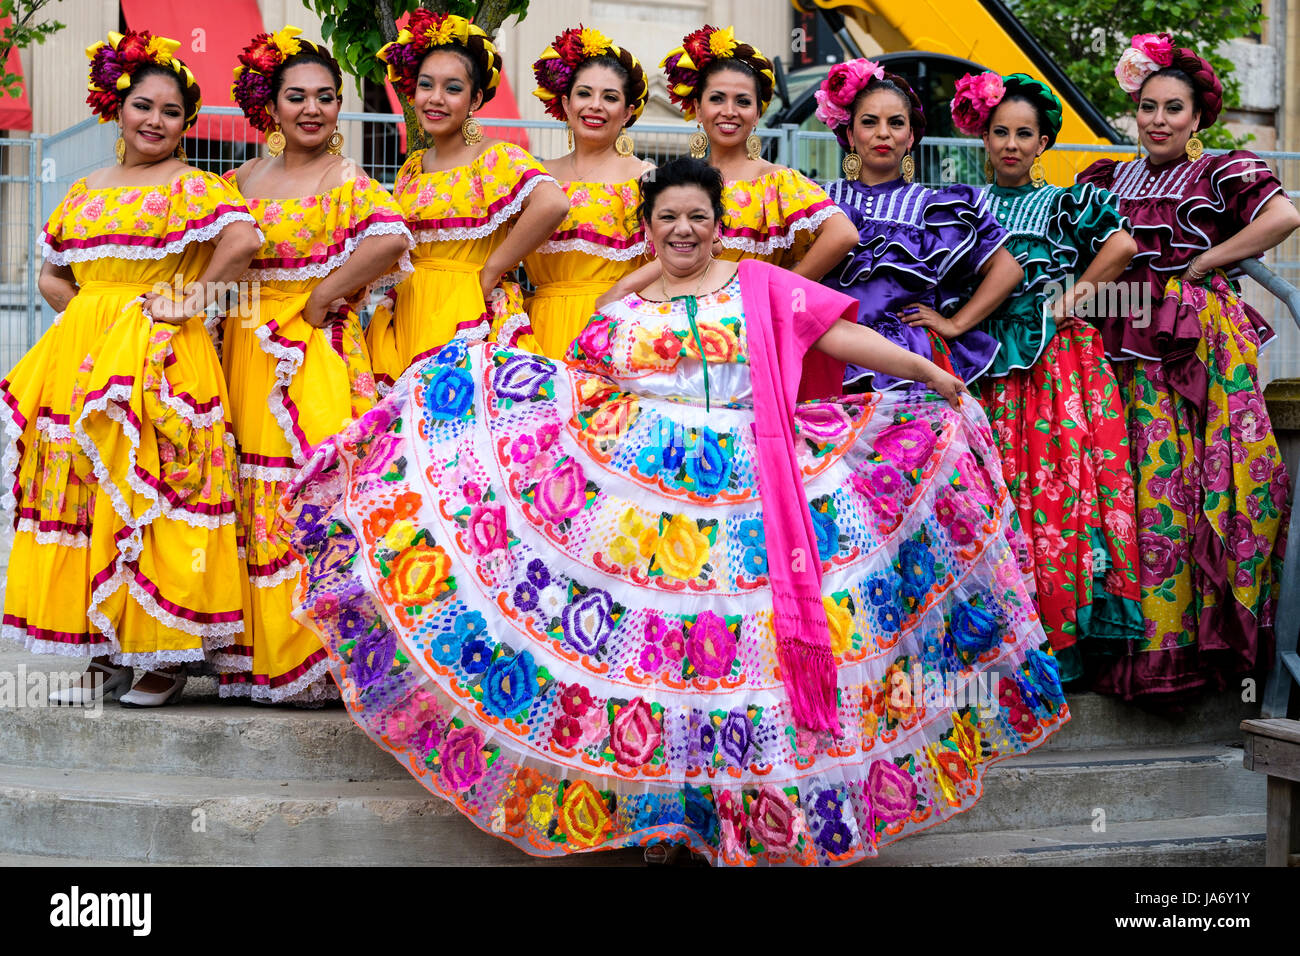 Eine Gruppe mexikanischer Mariachi-Tänzerinnen, die mexikanische traditionelle sinaloa-Kleider, gelbe Kleider, Nayarid-Kleider tragen, Mexikos kulturelles Erbe feiern, Folkloretanz, Gruppenfoto, in die Kamera schauen. Stockfoto